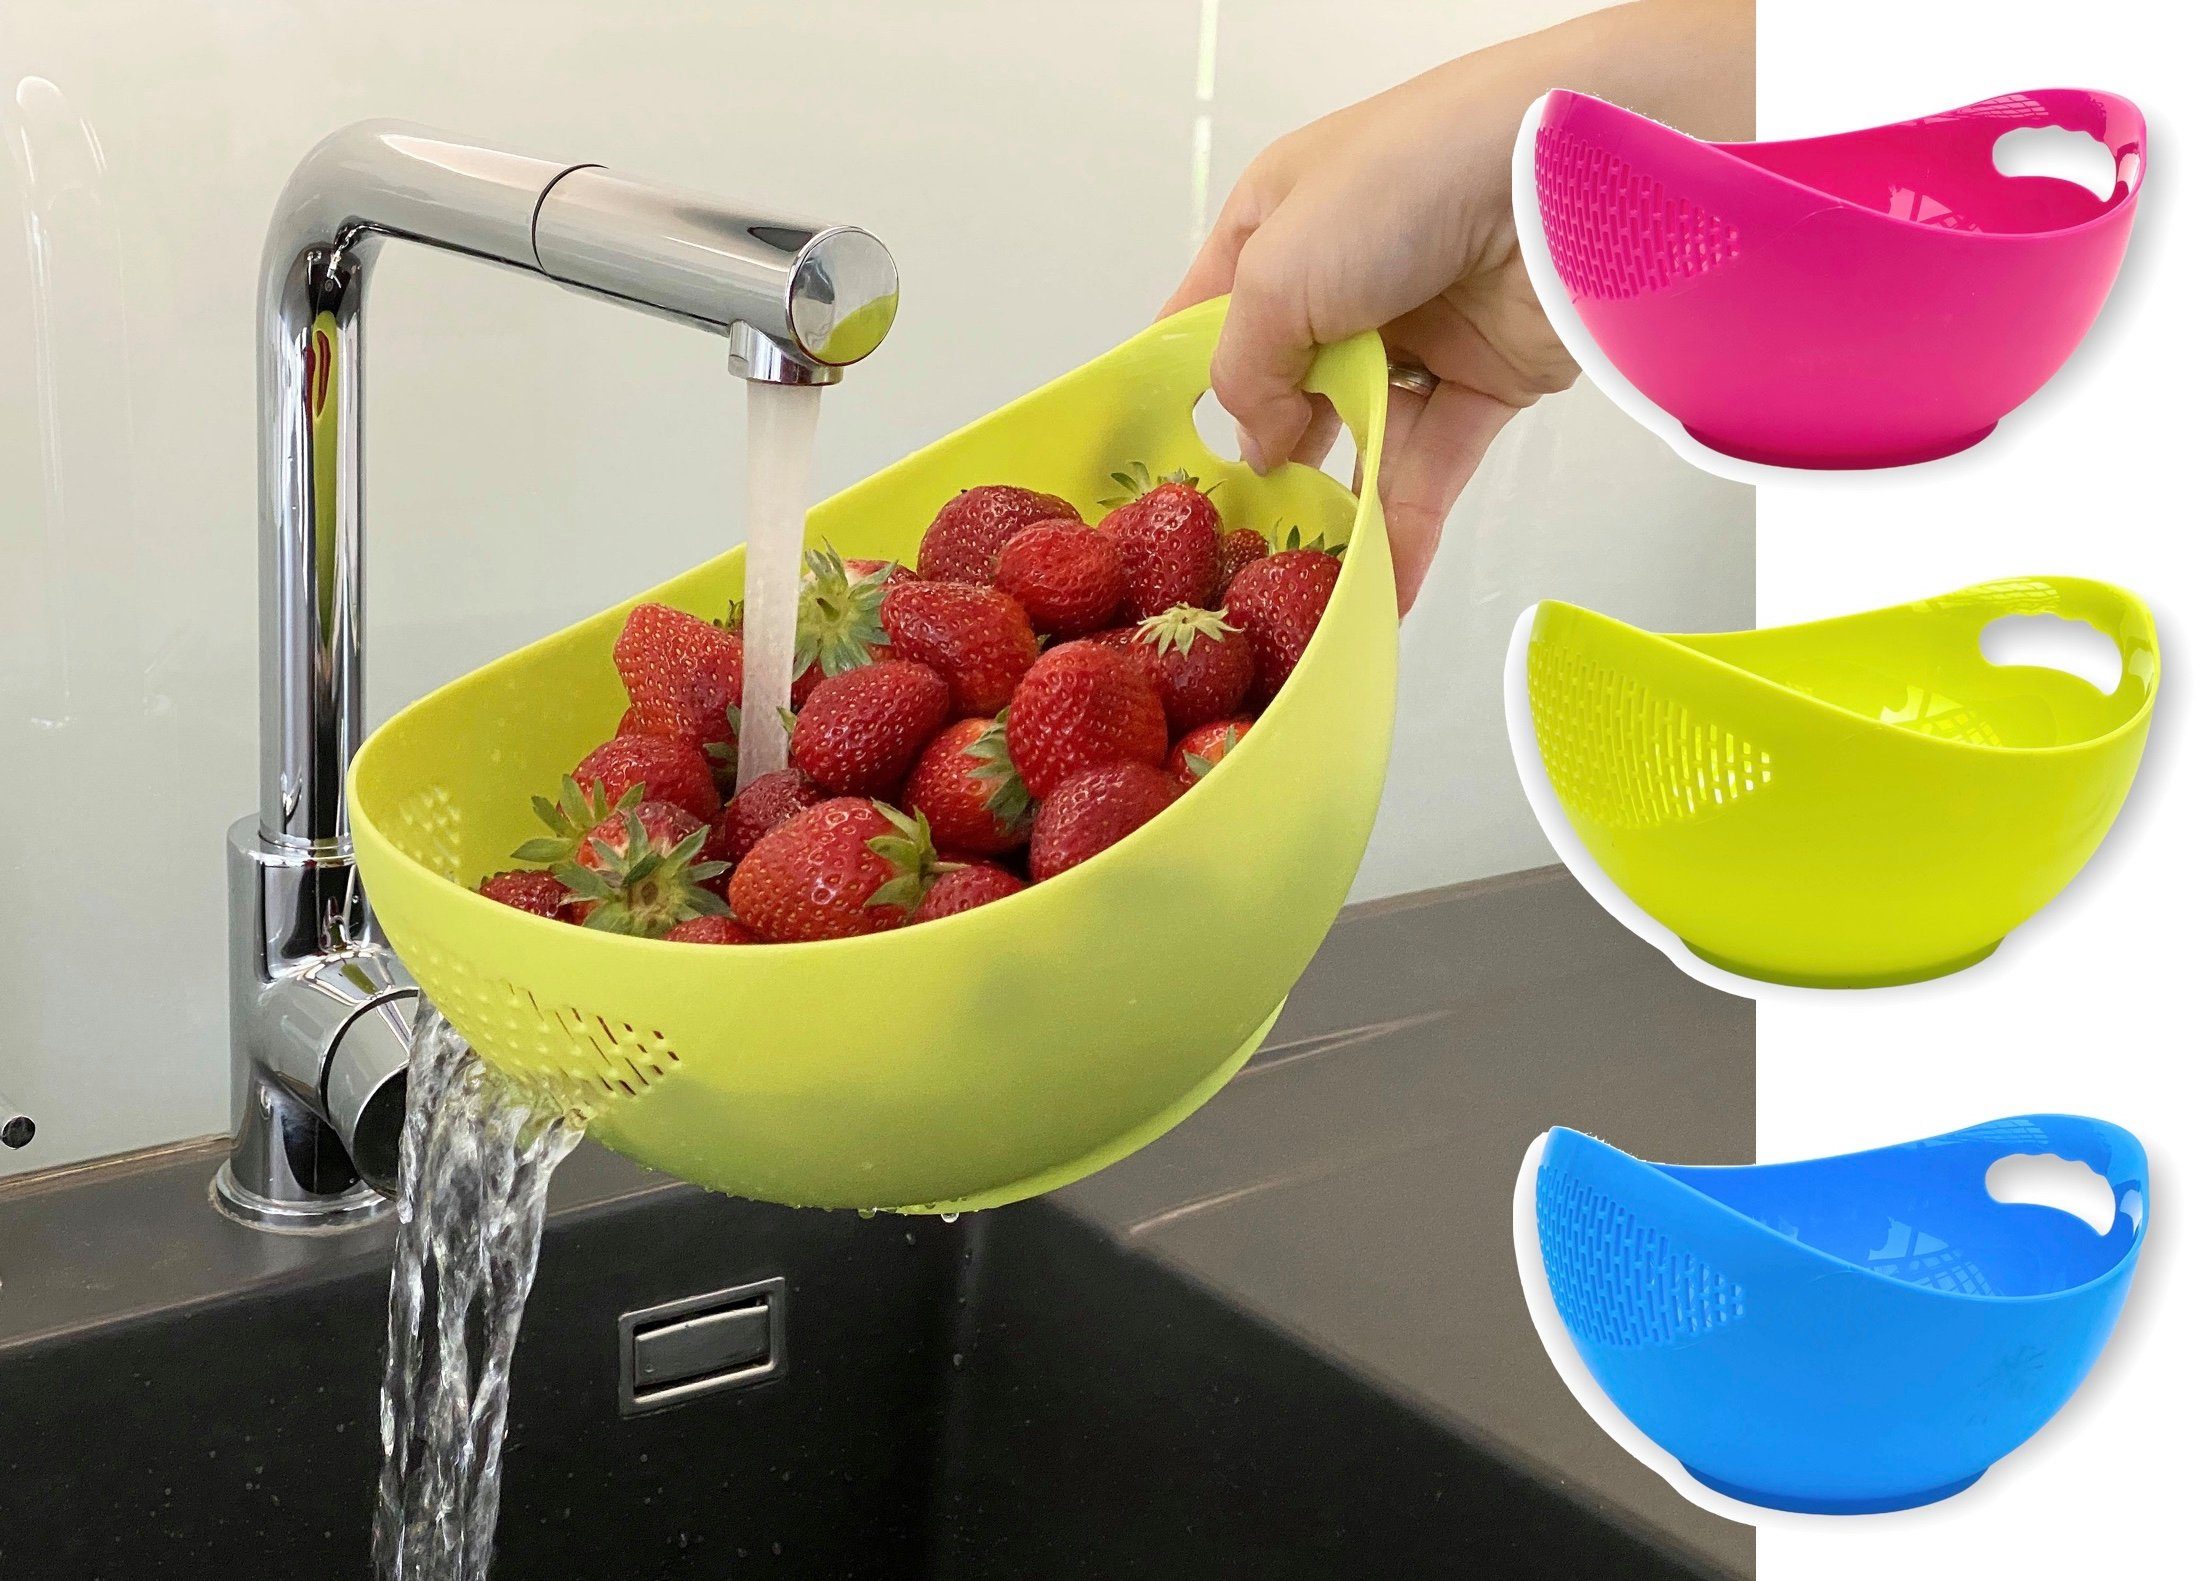 Kunststoff 521 Küchensieb DanDiBo Abtropfsieb Waschschüssel Spülmaschinenfest Seiher Schüssel mit Salatschüssel Sieb Nudelsieb